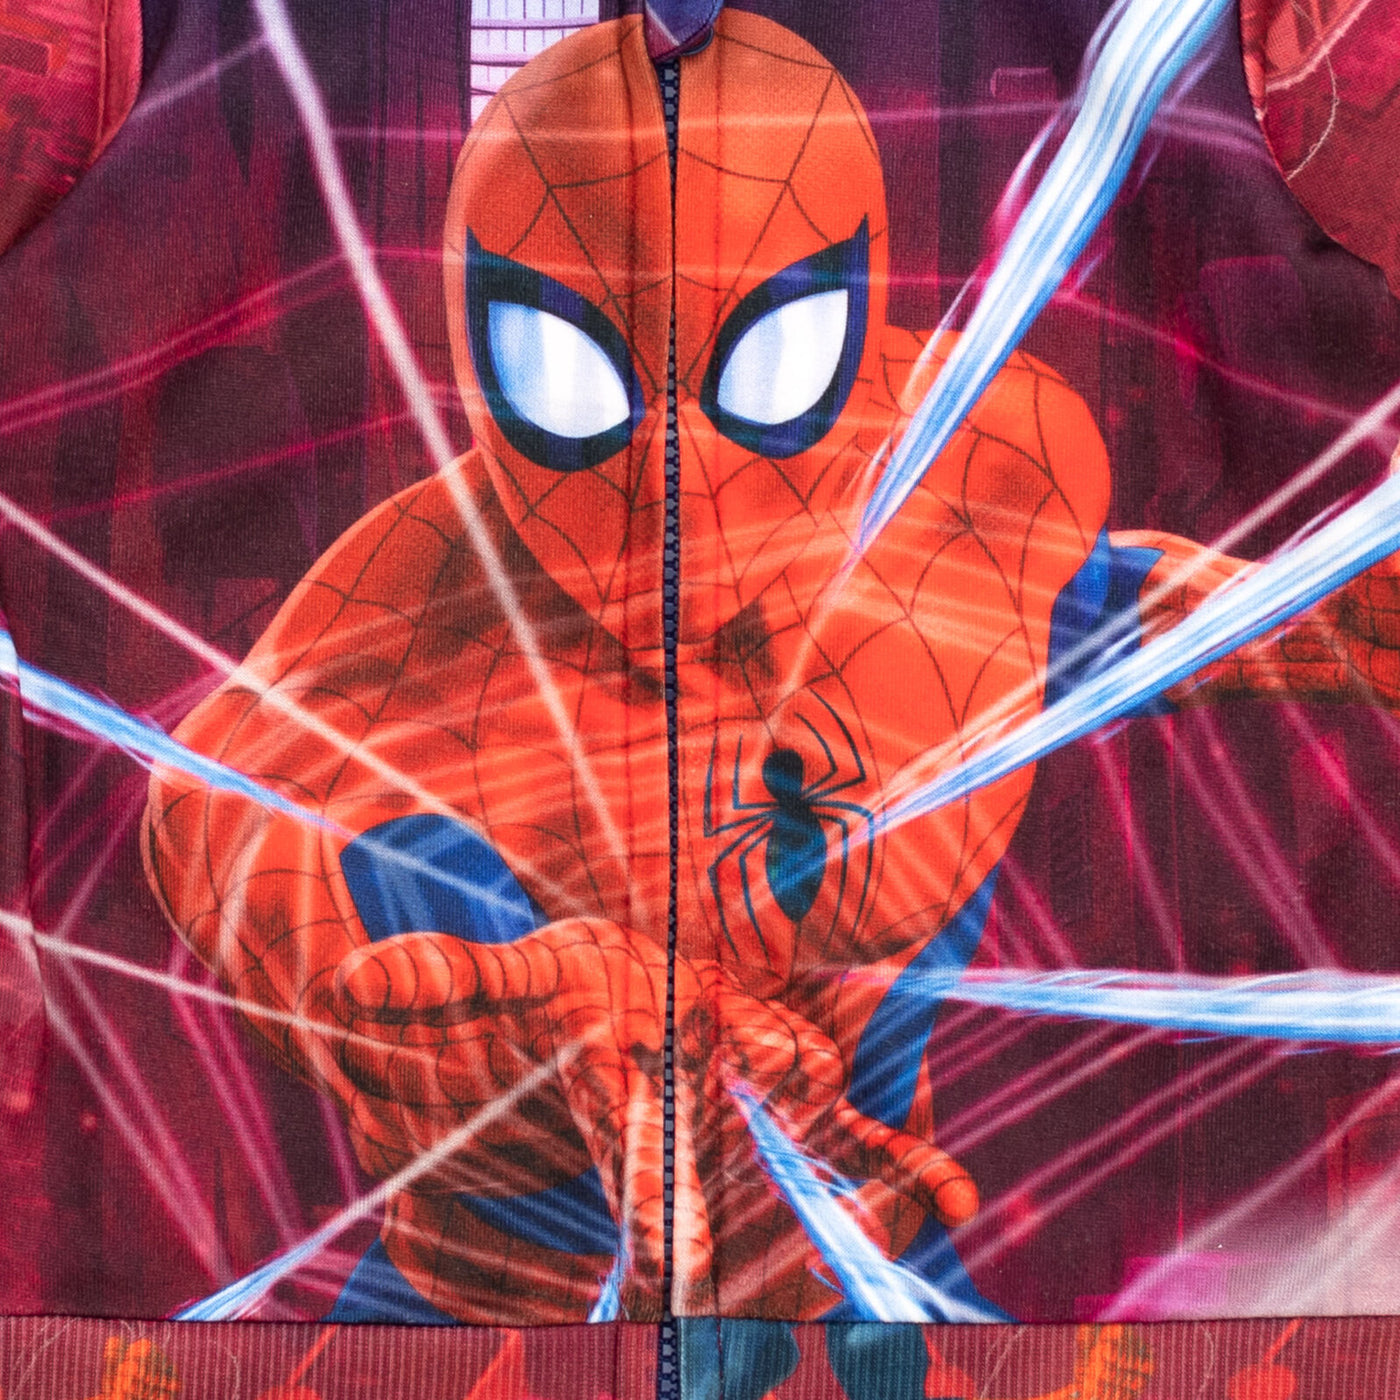 Sudadera con capucha y cremallera Marvel Spider-Man Fleece